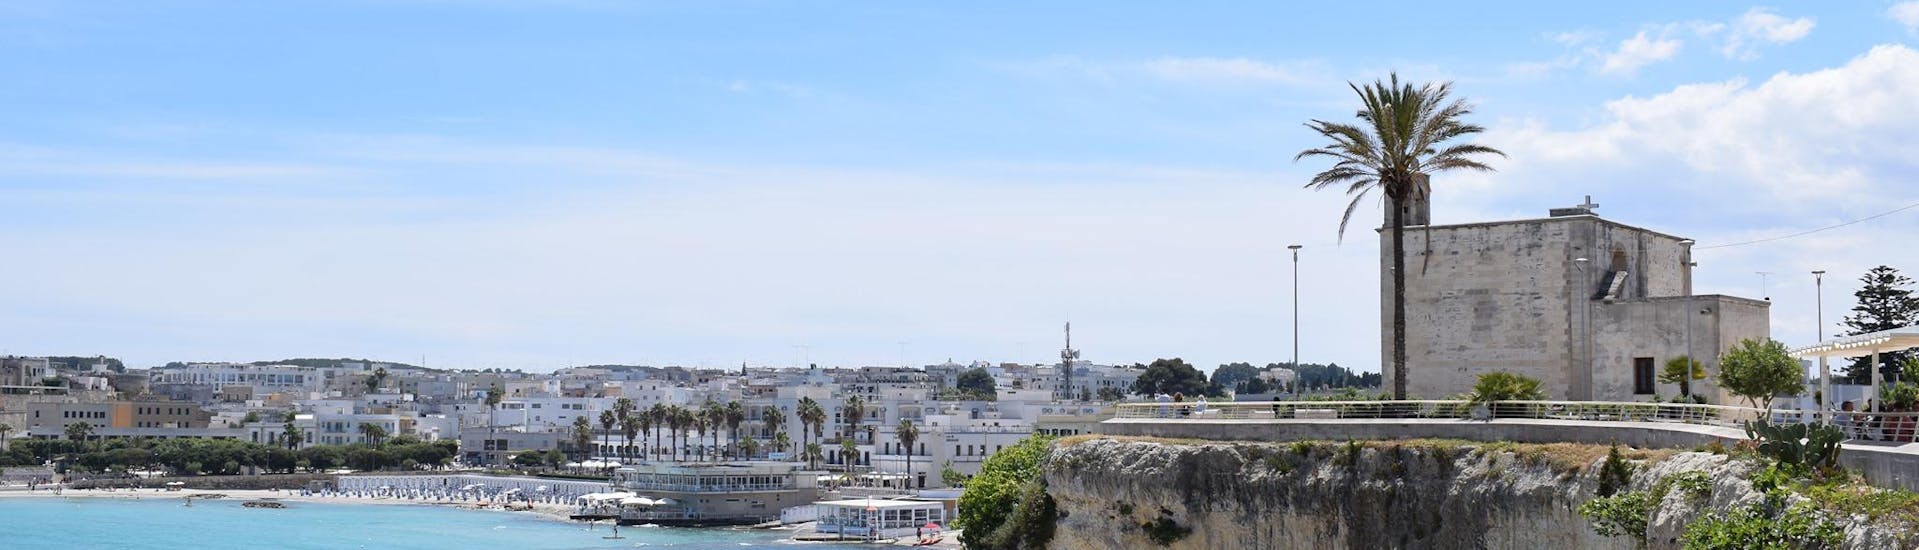 La costa di Otranto vista durante una gita con Salento Gite in Barca.